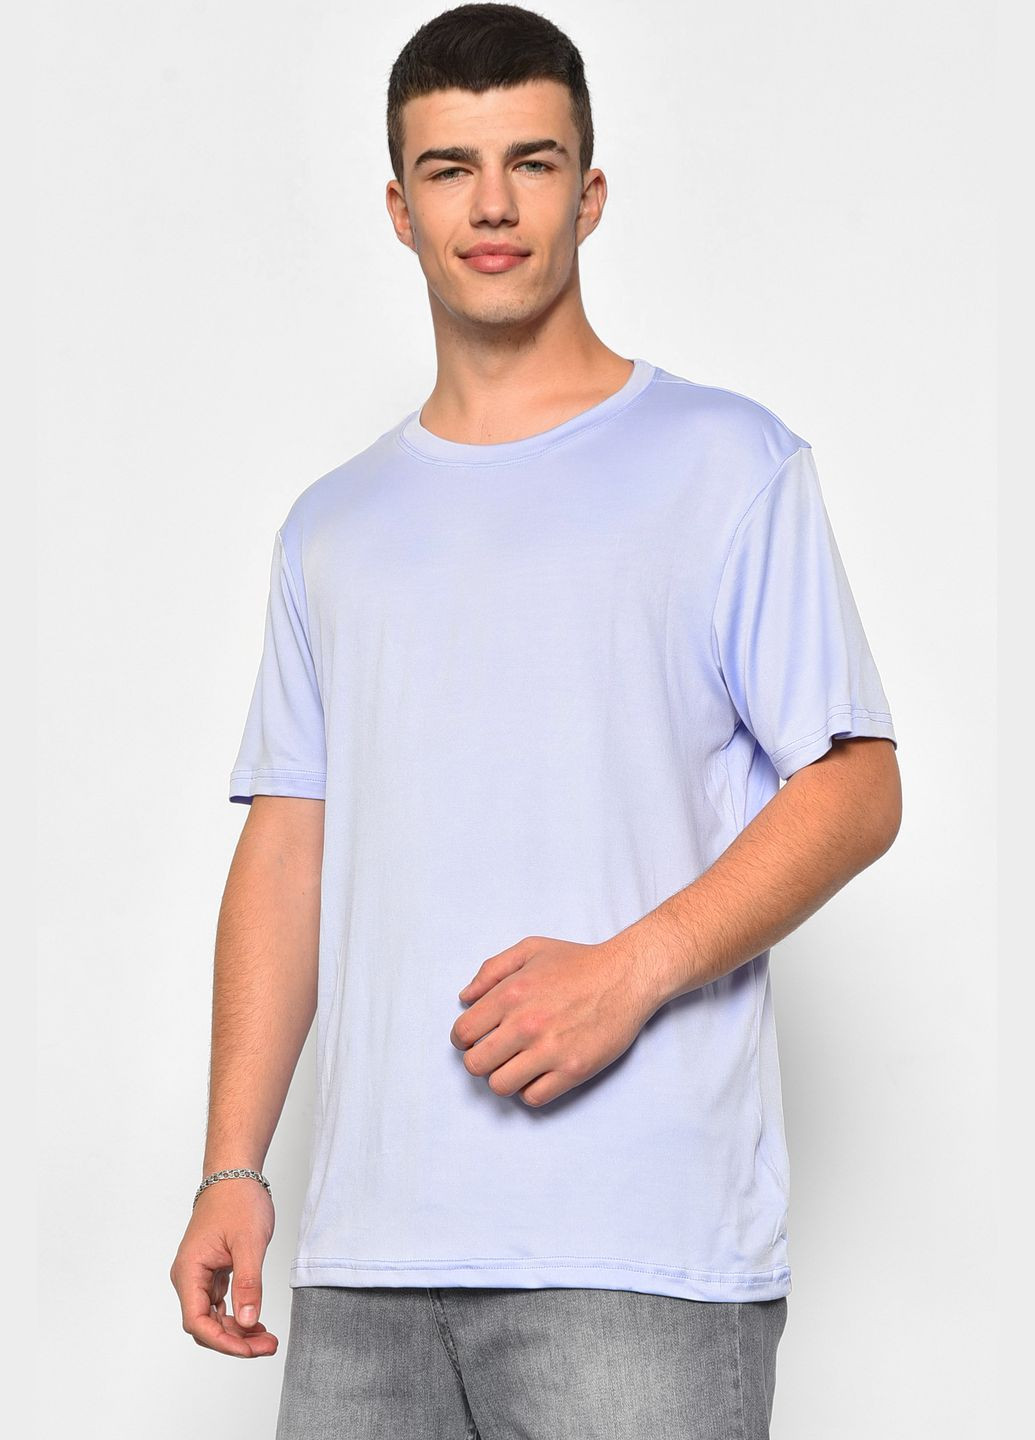 Сиреневая футболка мужская однотонная сиреневого цвета Let's Shop